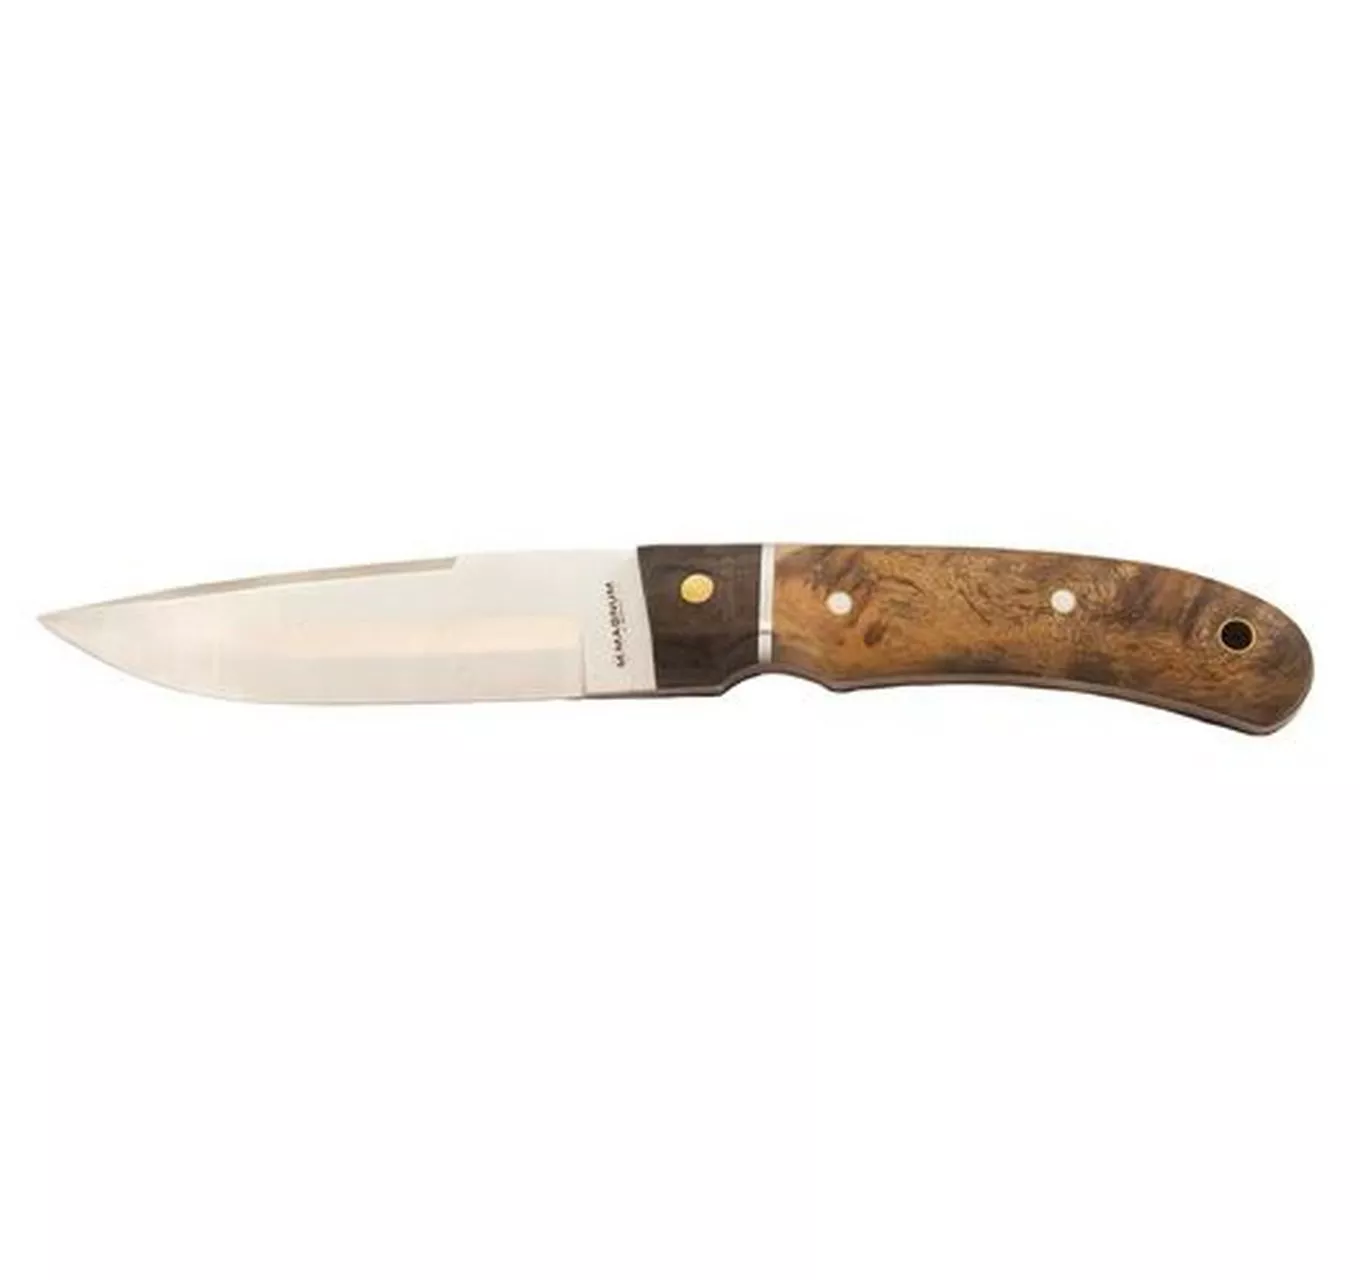 Pakkawood Sheath Knife 4.5"